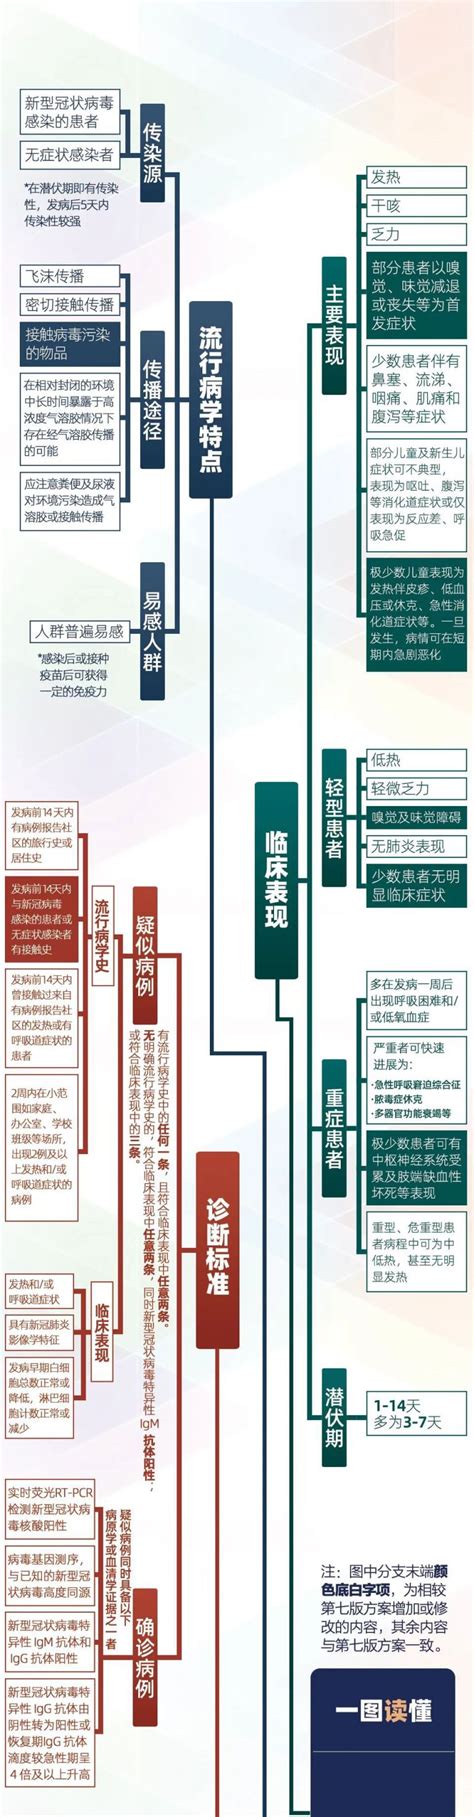 新冠肺炎发病5天内传染性较强 一图看懂第八版诊疗方案- 北京本地宝